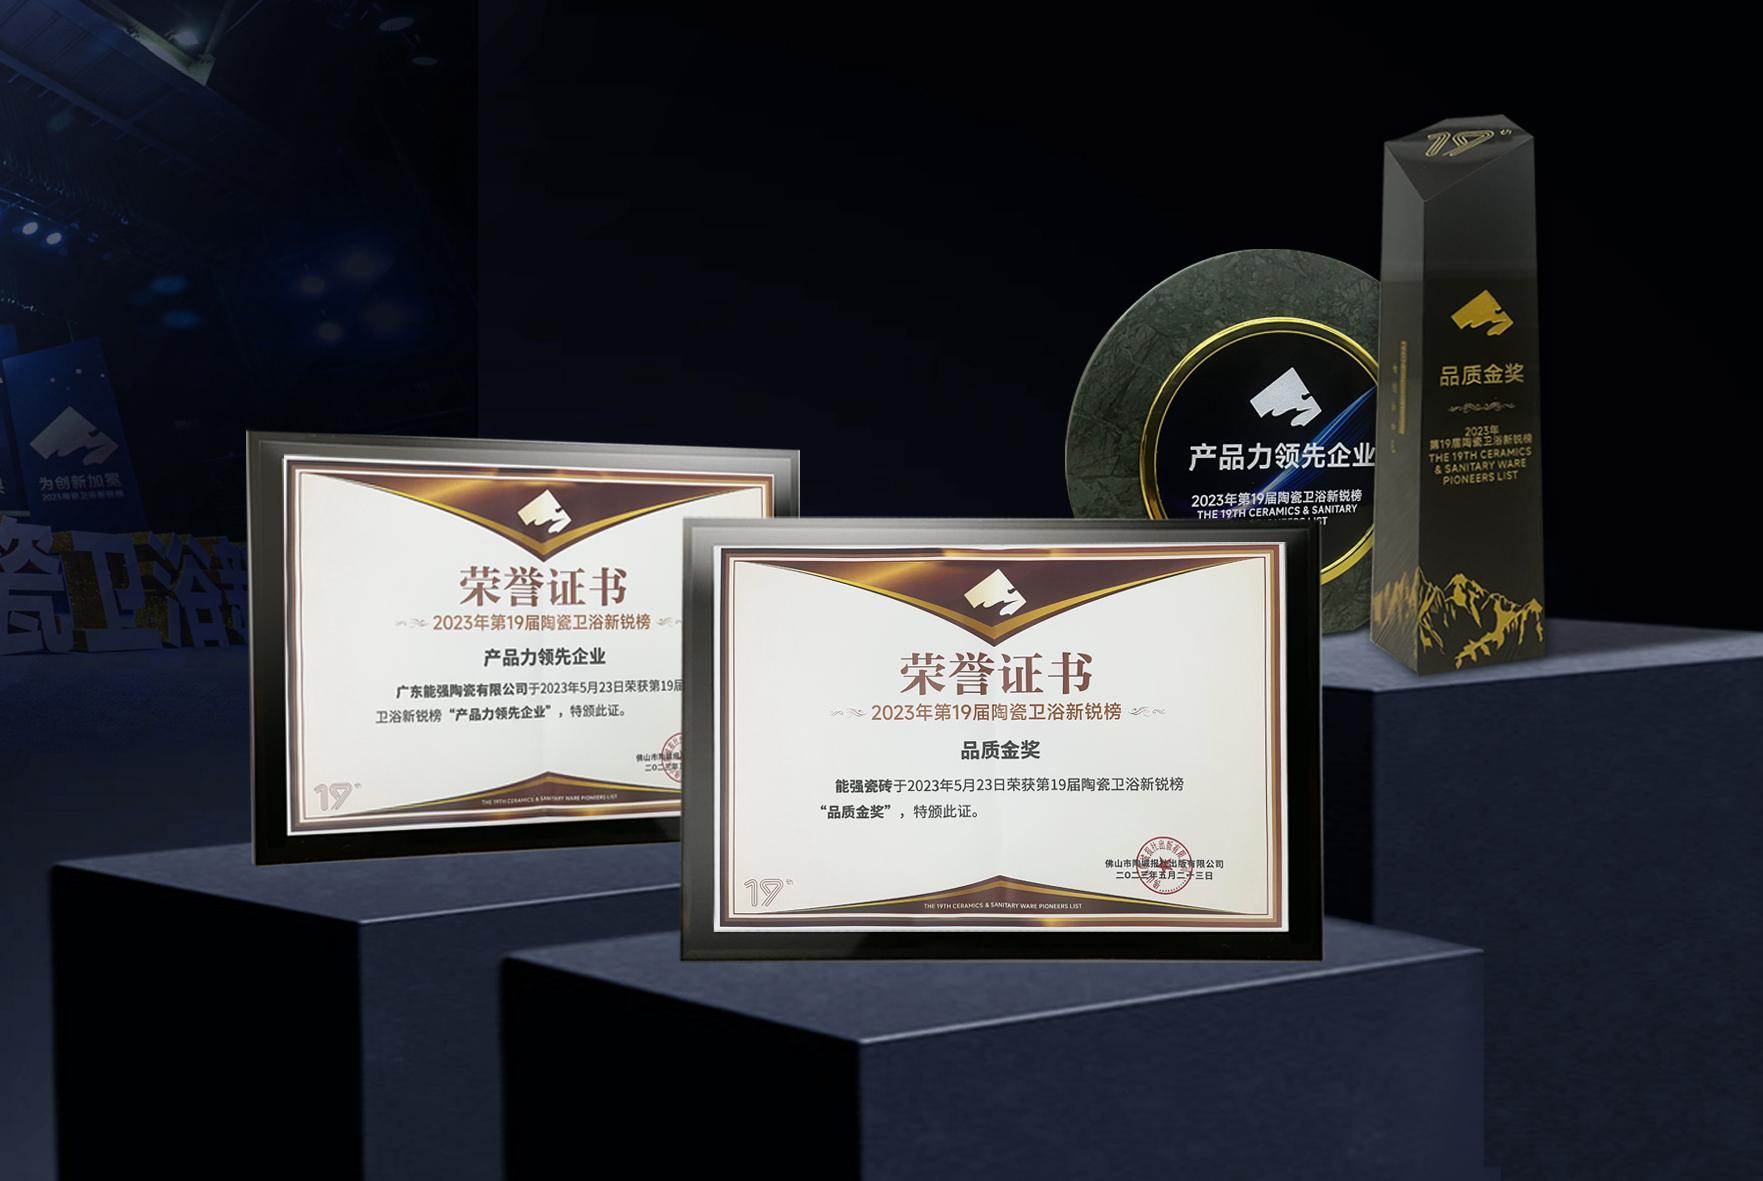 重磅荣誉 | 大玩家彩票瓷砖实力荣膺“中国陶瓷行业新锐榜”双项大奖！